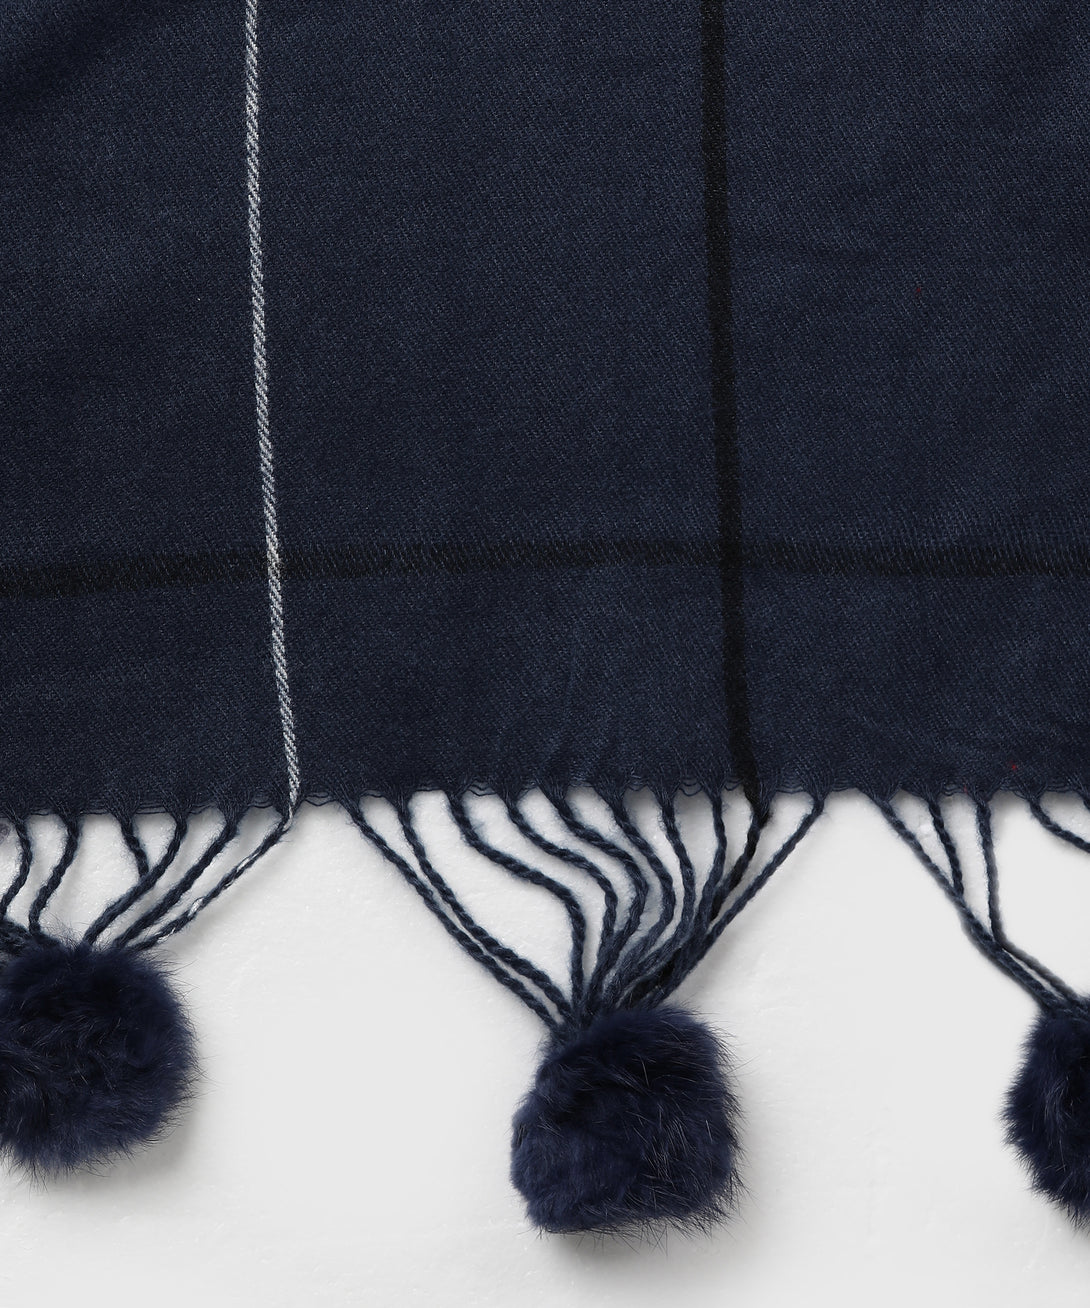 Jayri 100% Soft Woolen Women's Stole Winter Round Stoles, Black